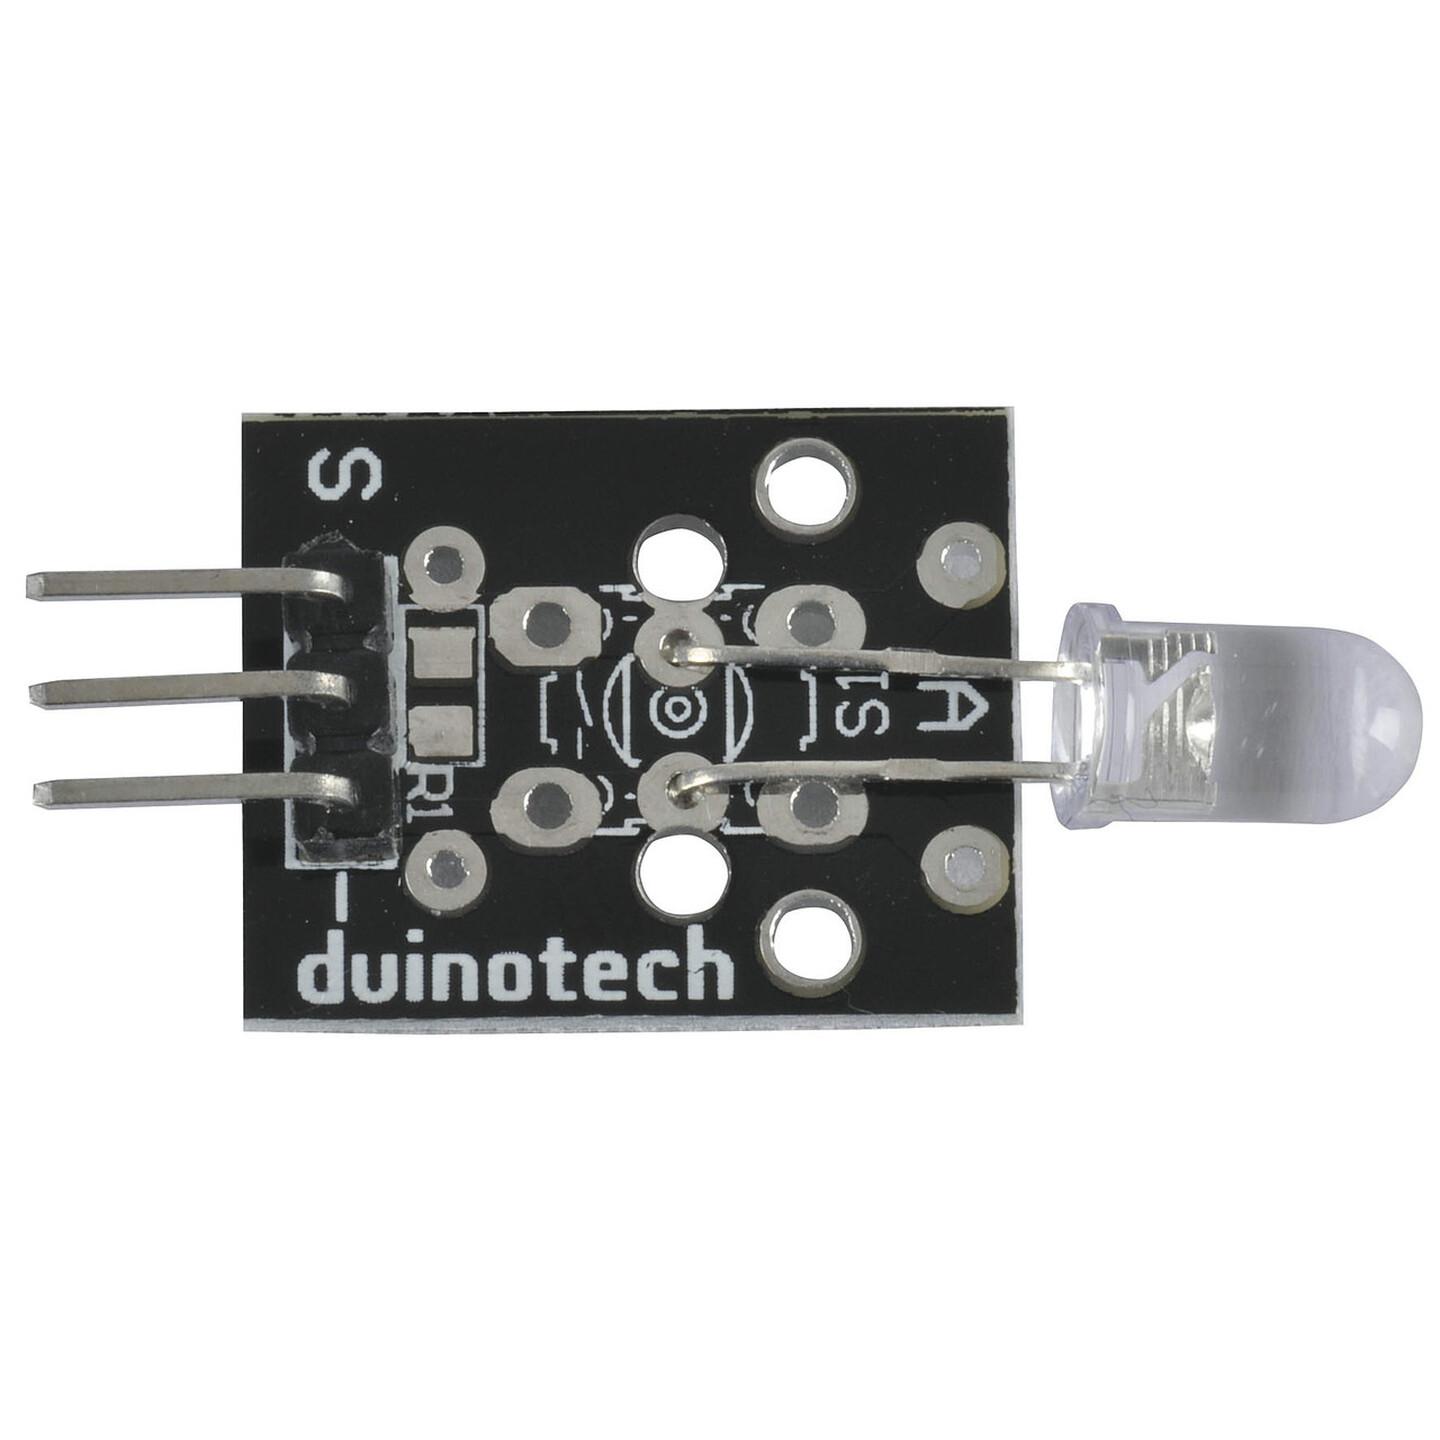 Duinotech Arduino Compatible Infrared Transmitter Module